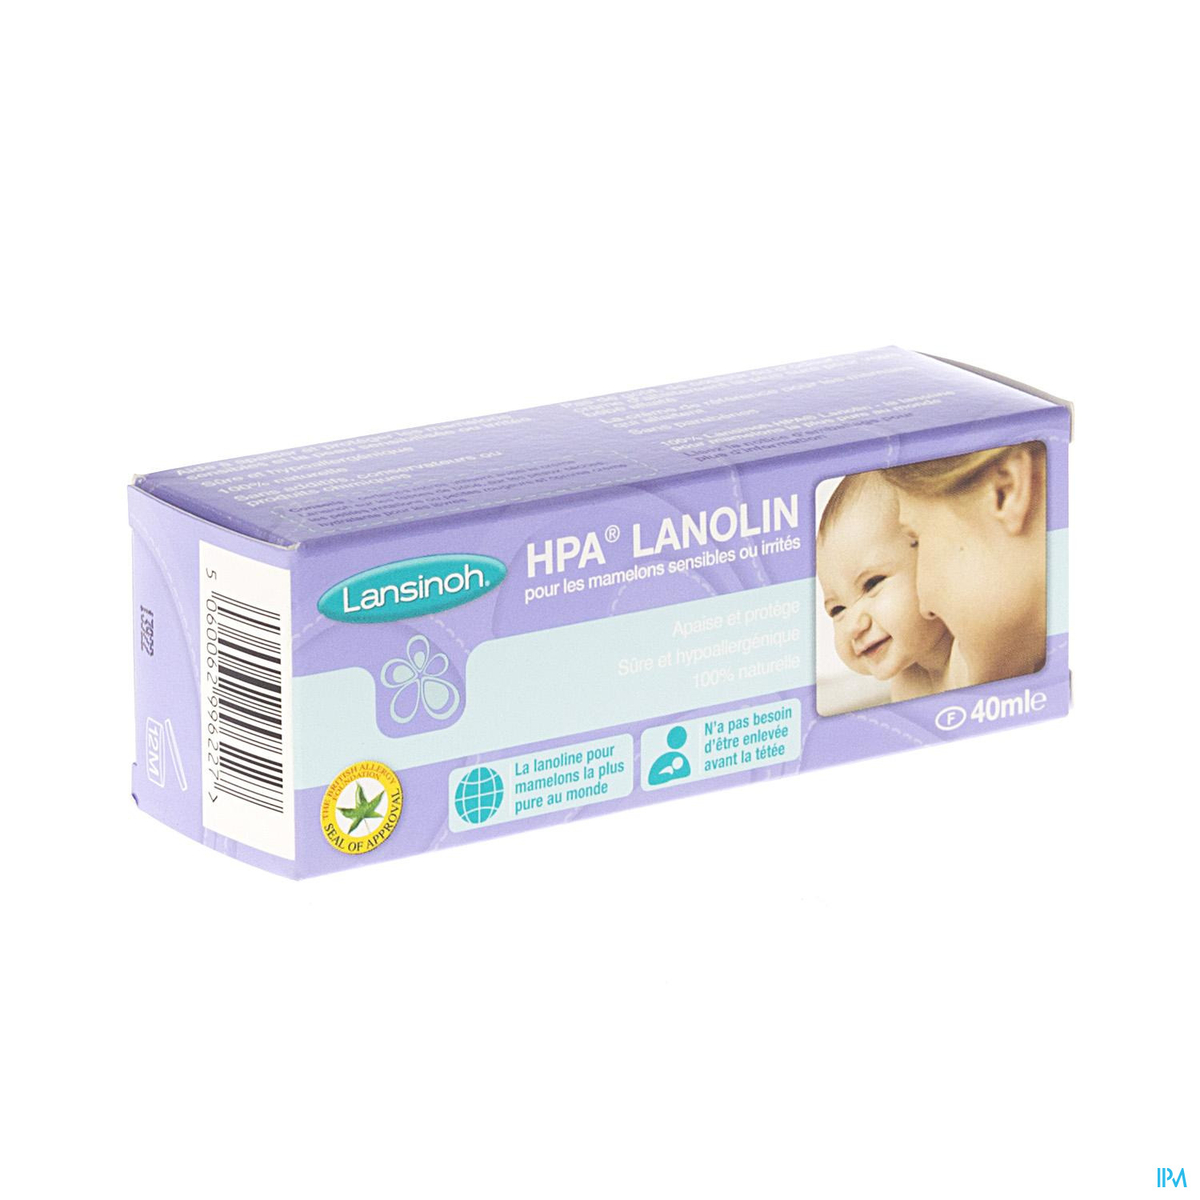 Lansinoh I Crème Lanoline HPA 40 ml & MAM Bout de sein – Lot de 2 bouts de  sein en silicone – Accessoire spécial allaitement doux comme la peau avec